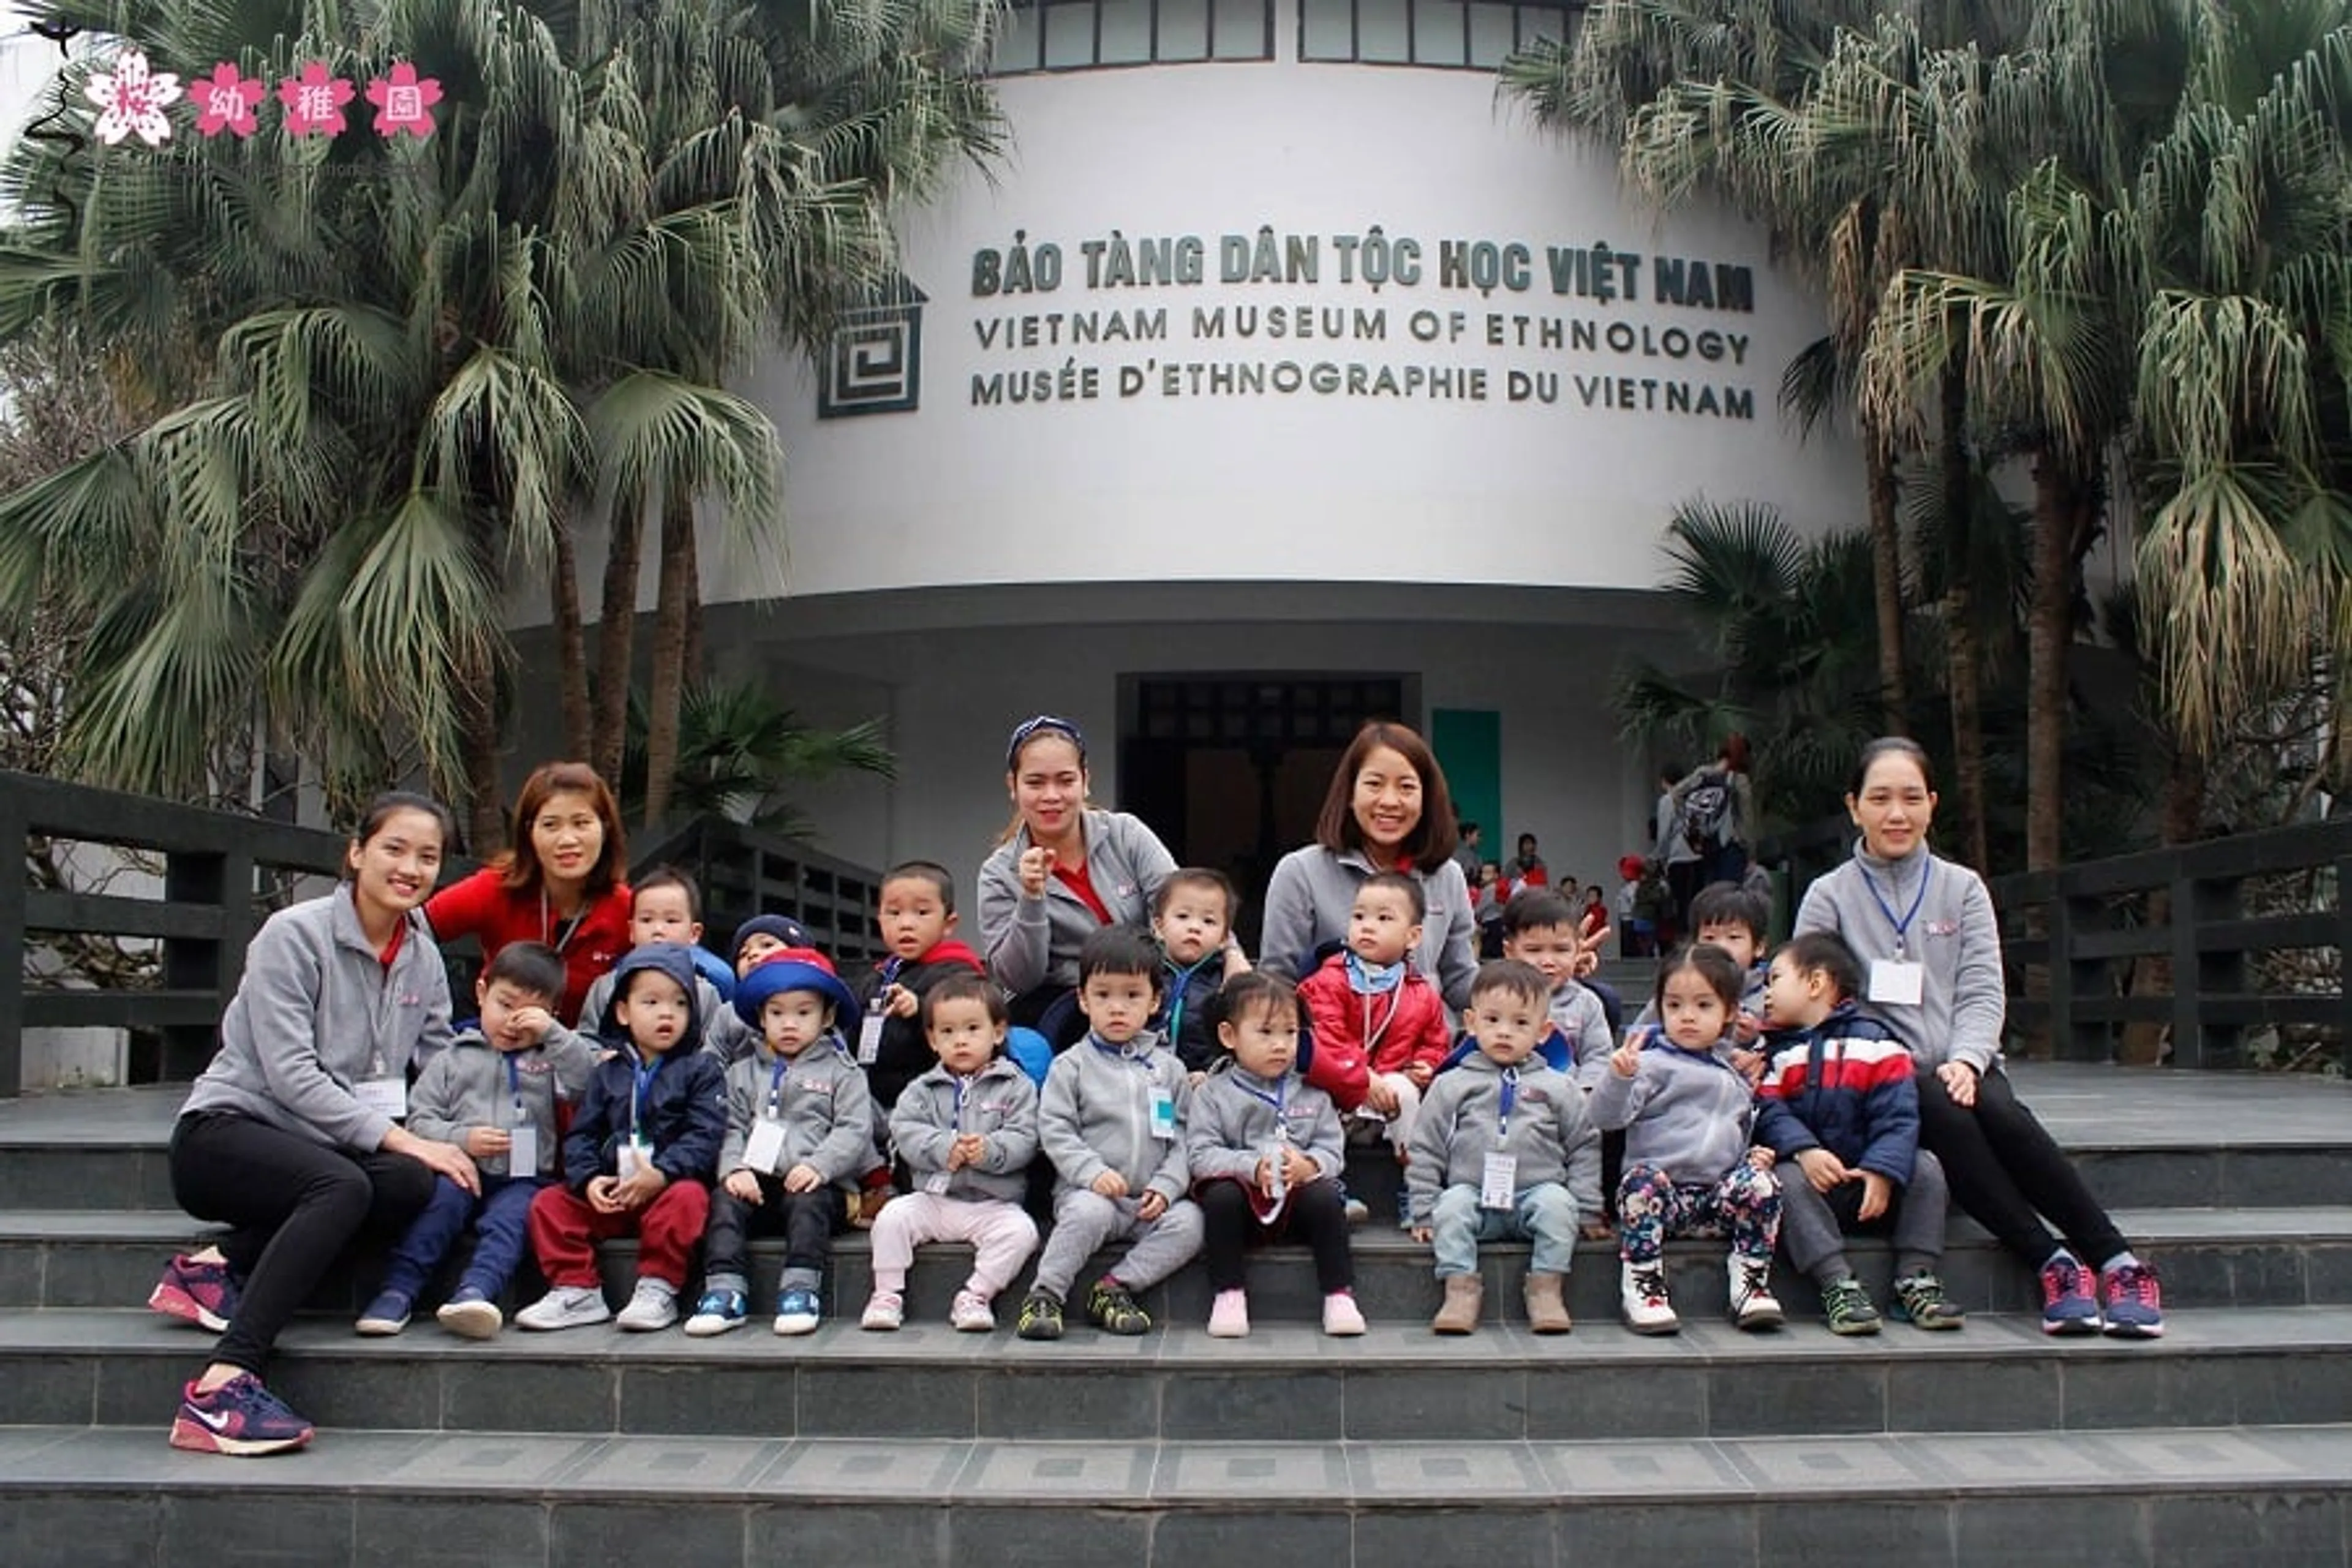 Bảo tàng dân tộc học Việt Nam - Điểm đến hấp dẫn cho du khách yêu văn hóa